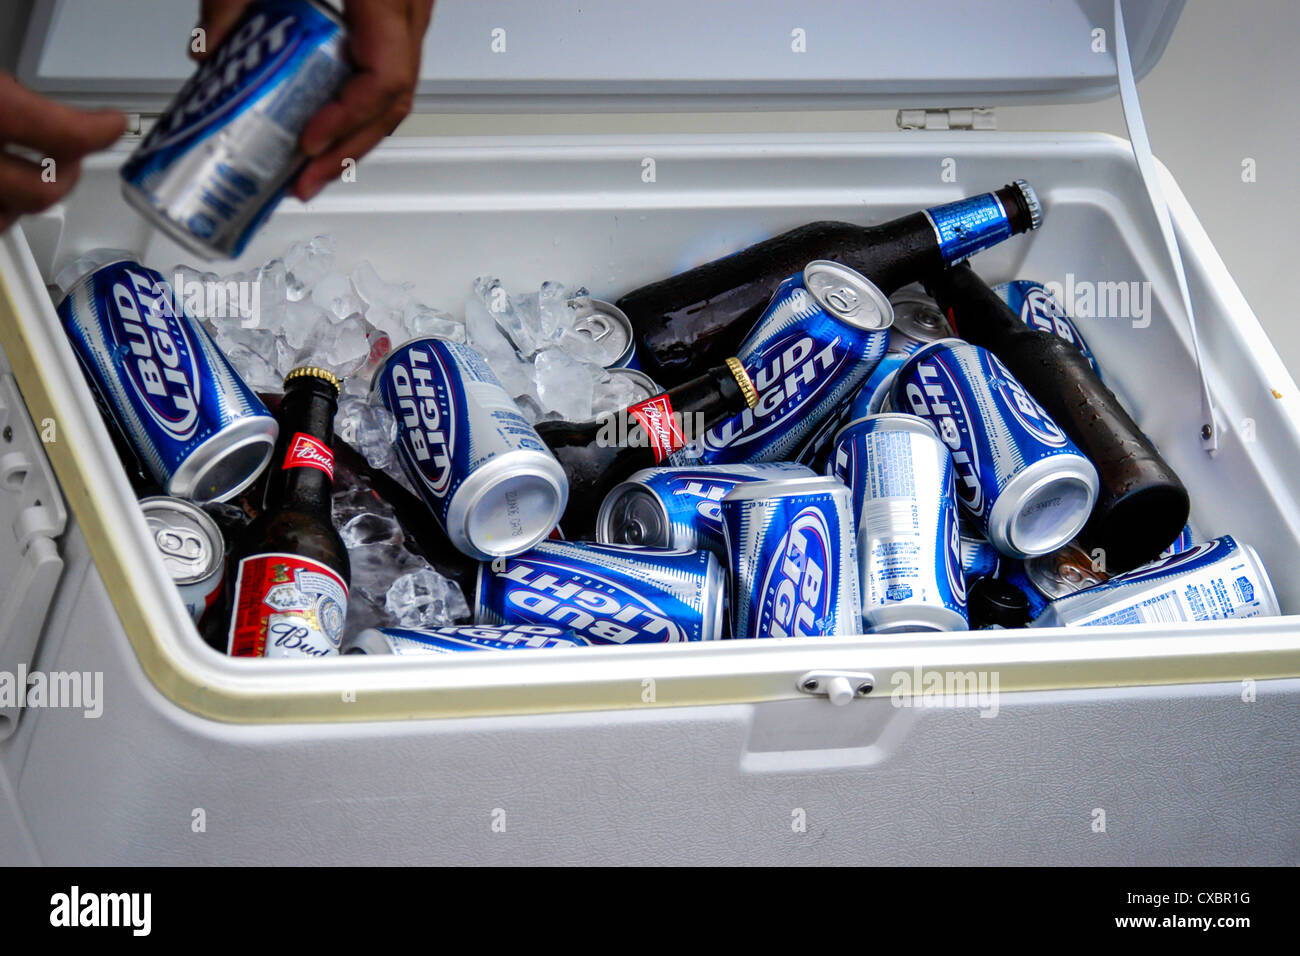 Dosen und Flaschen Bier in einer Kühlbox Stockfotografie - Alamy